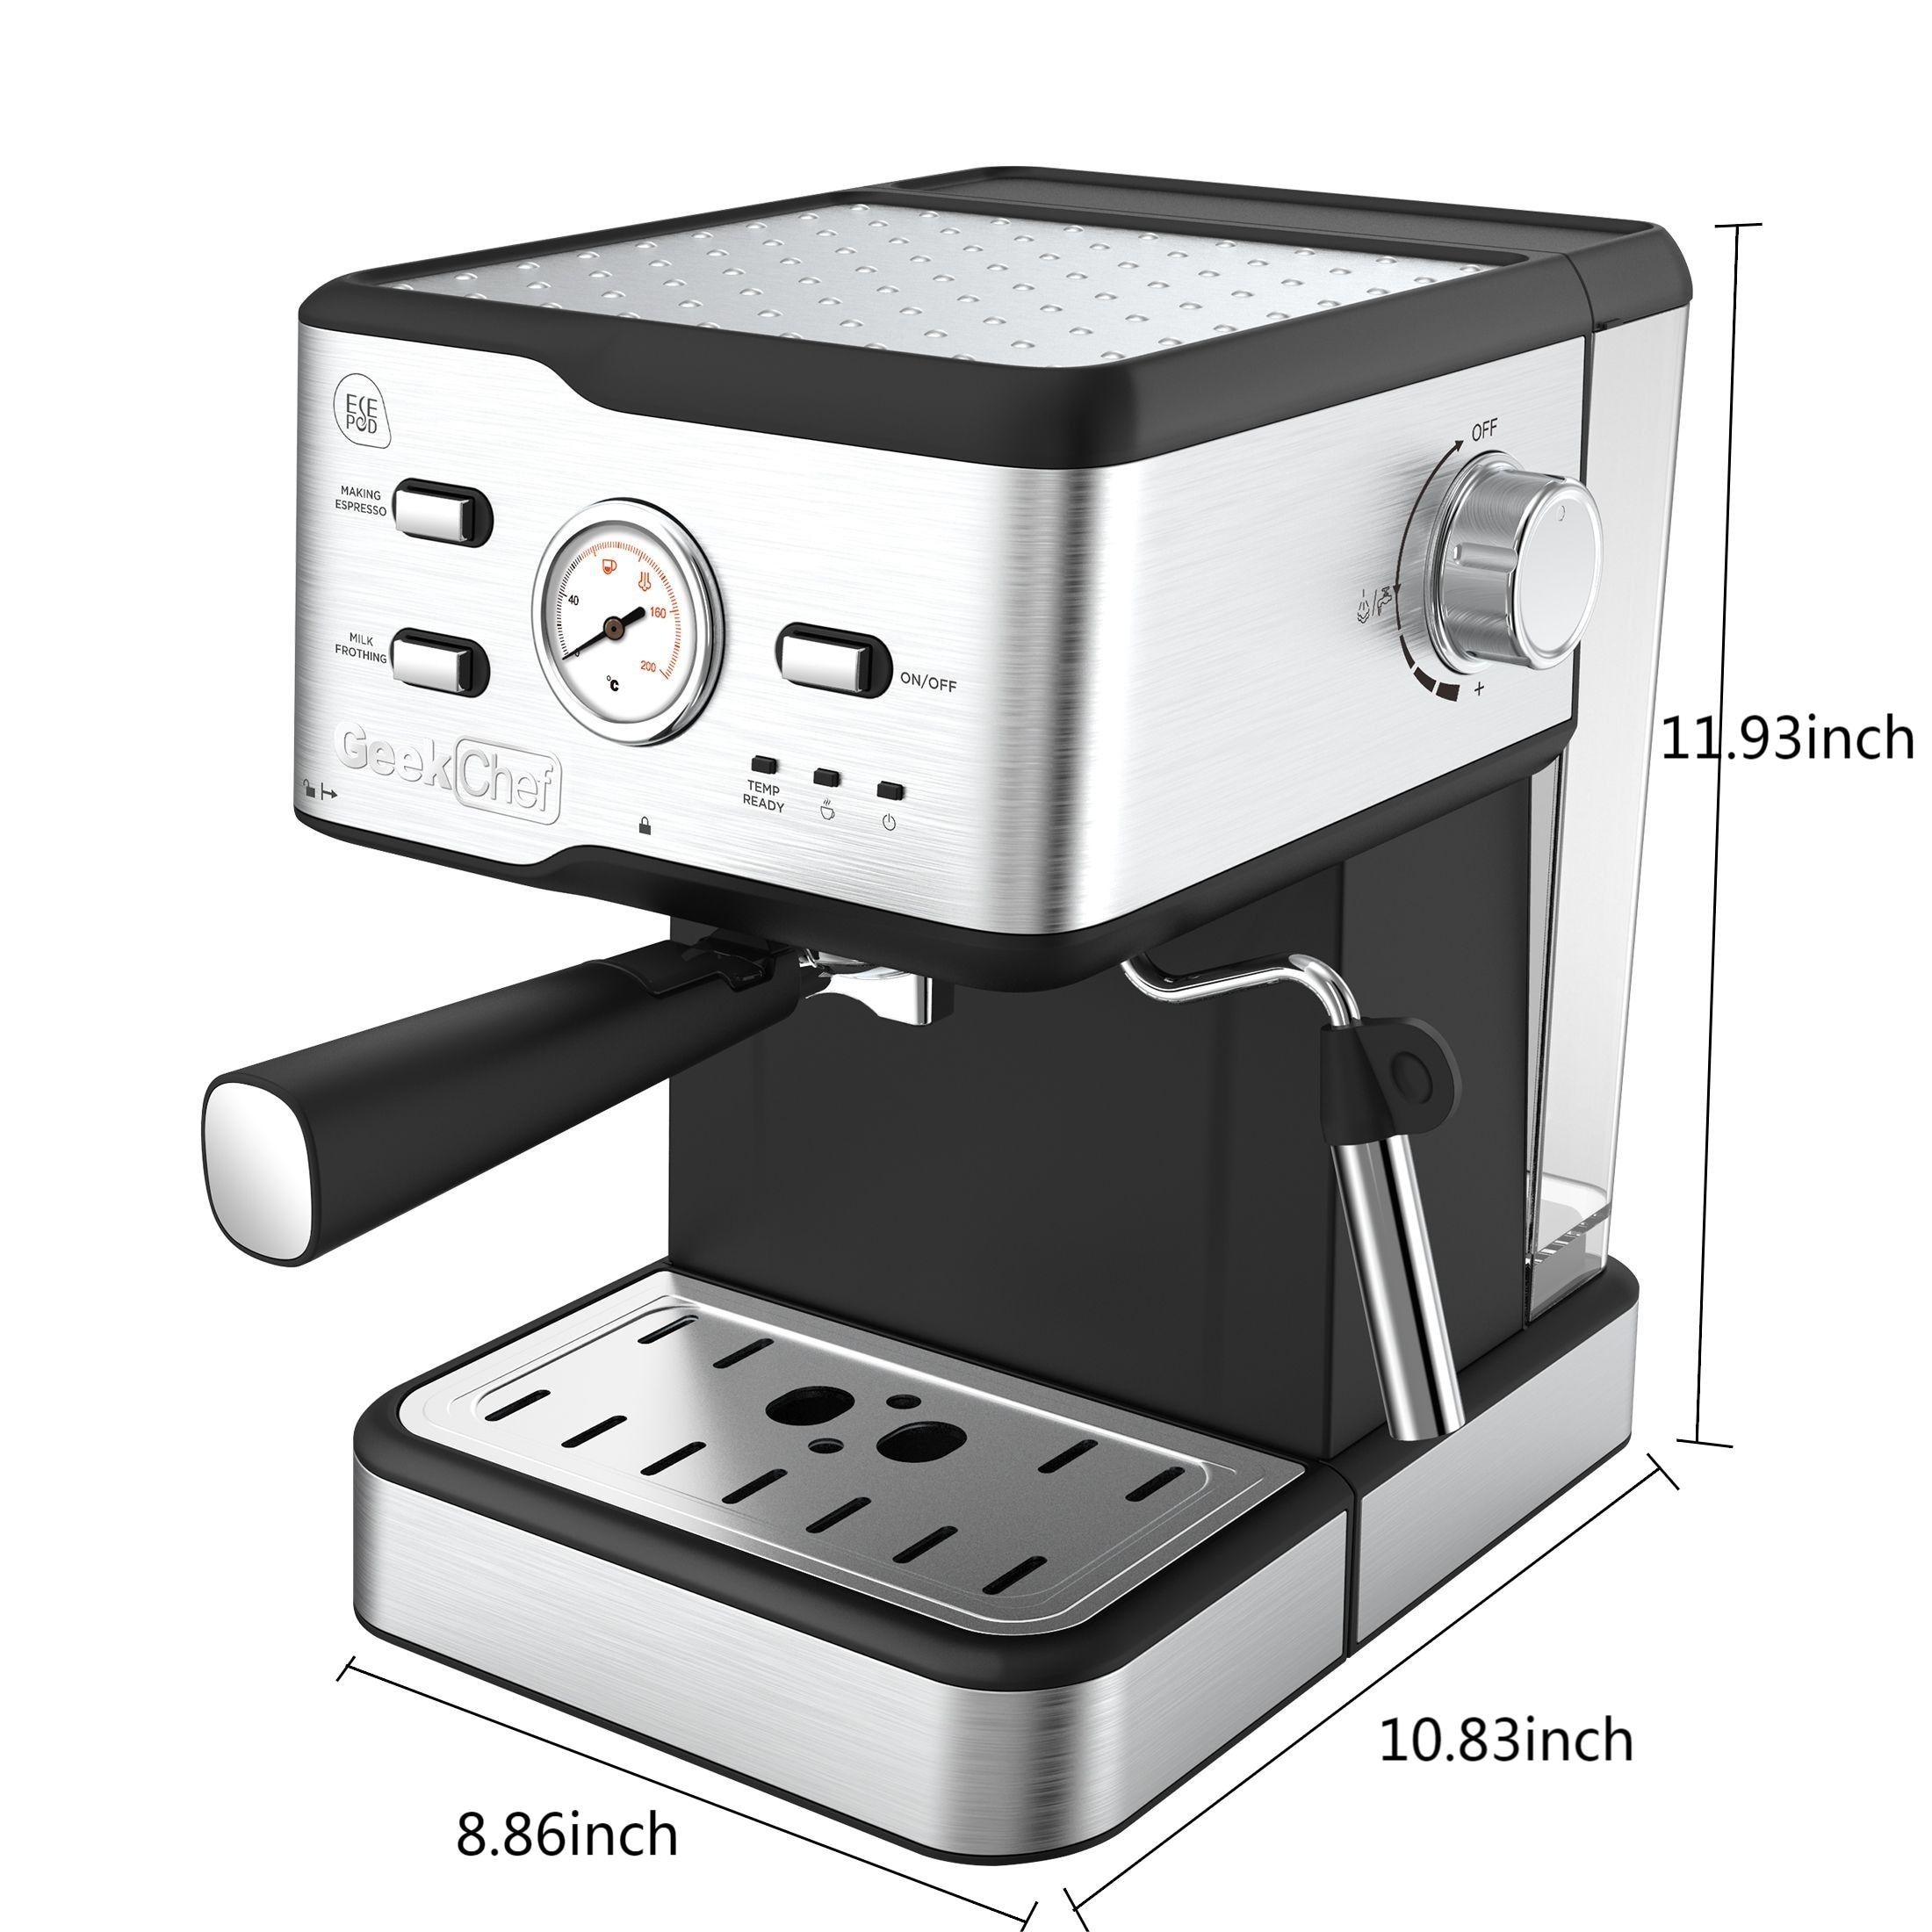 Geek Chef Espresso Machine, 20 Bar Espresso Machine With Milk